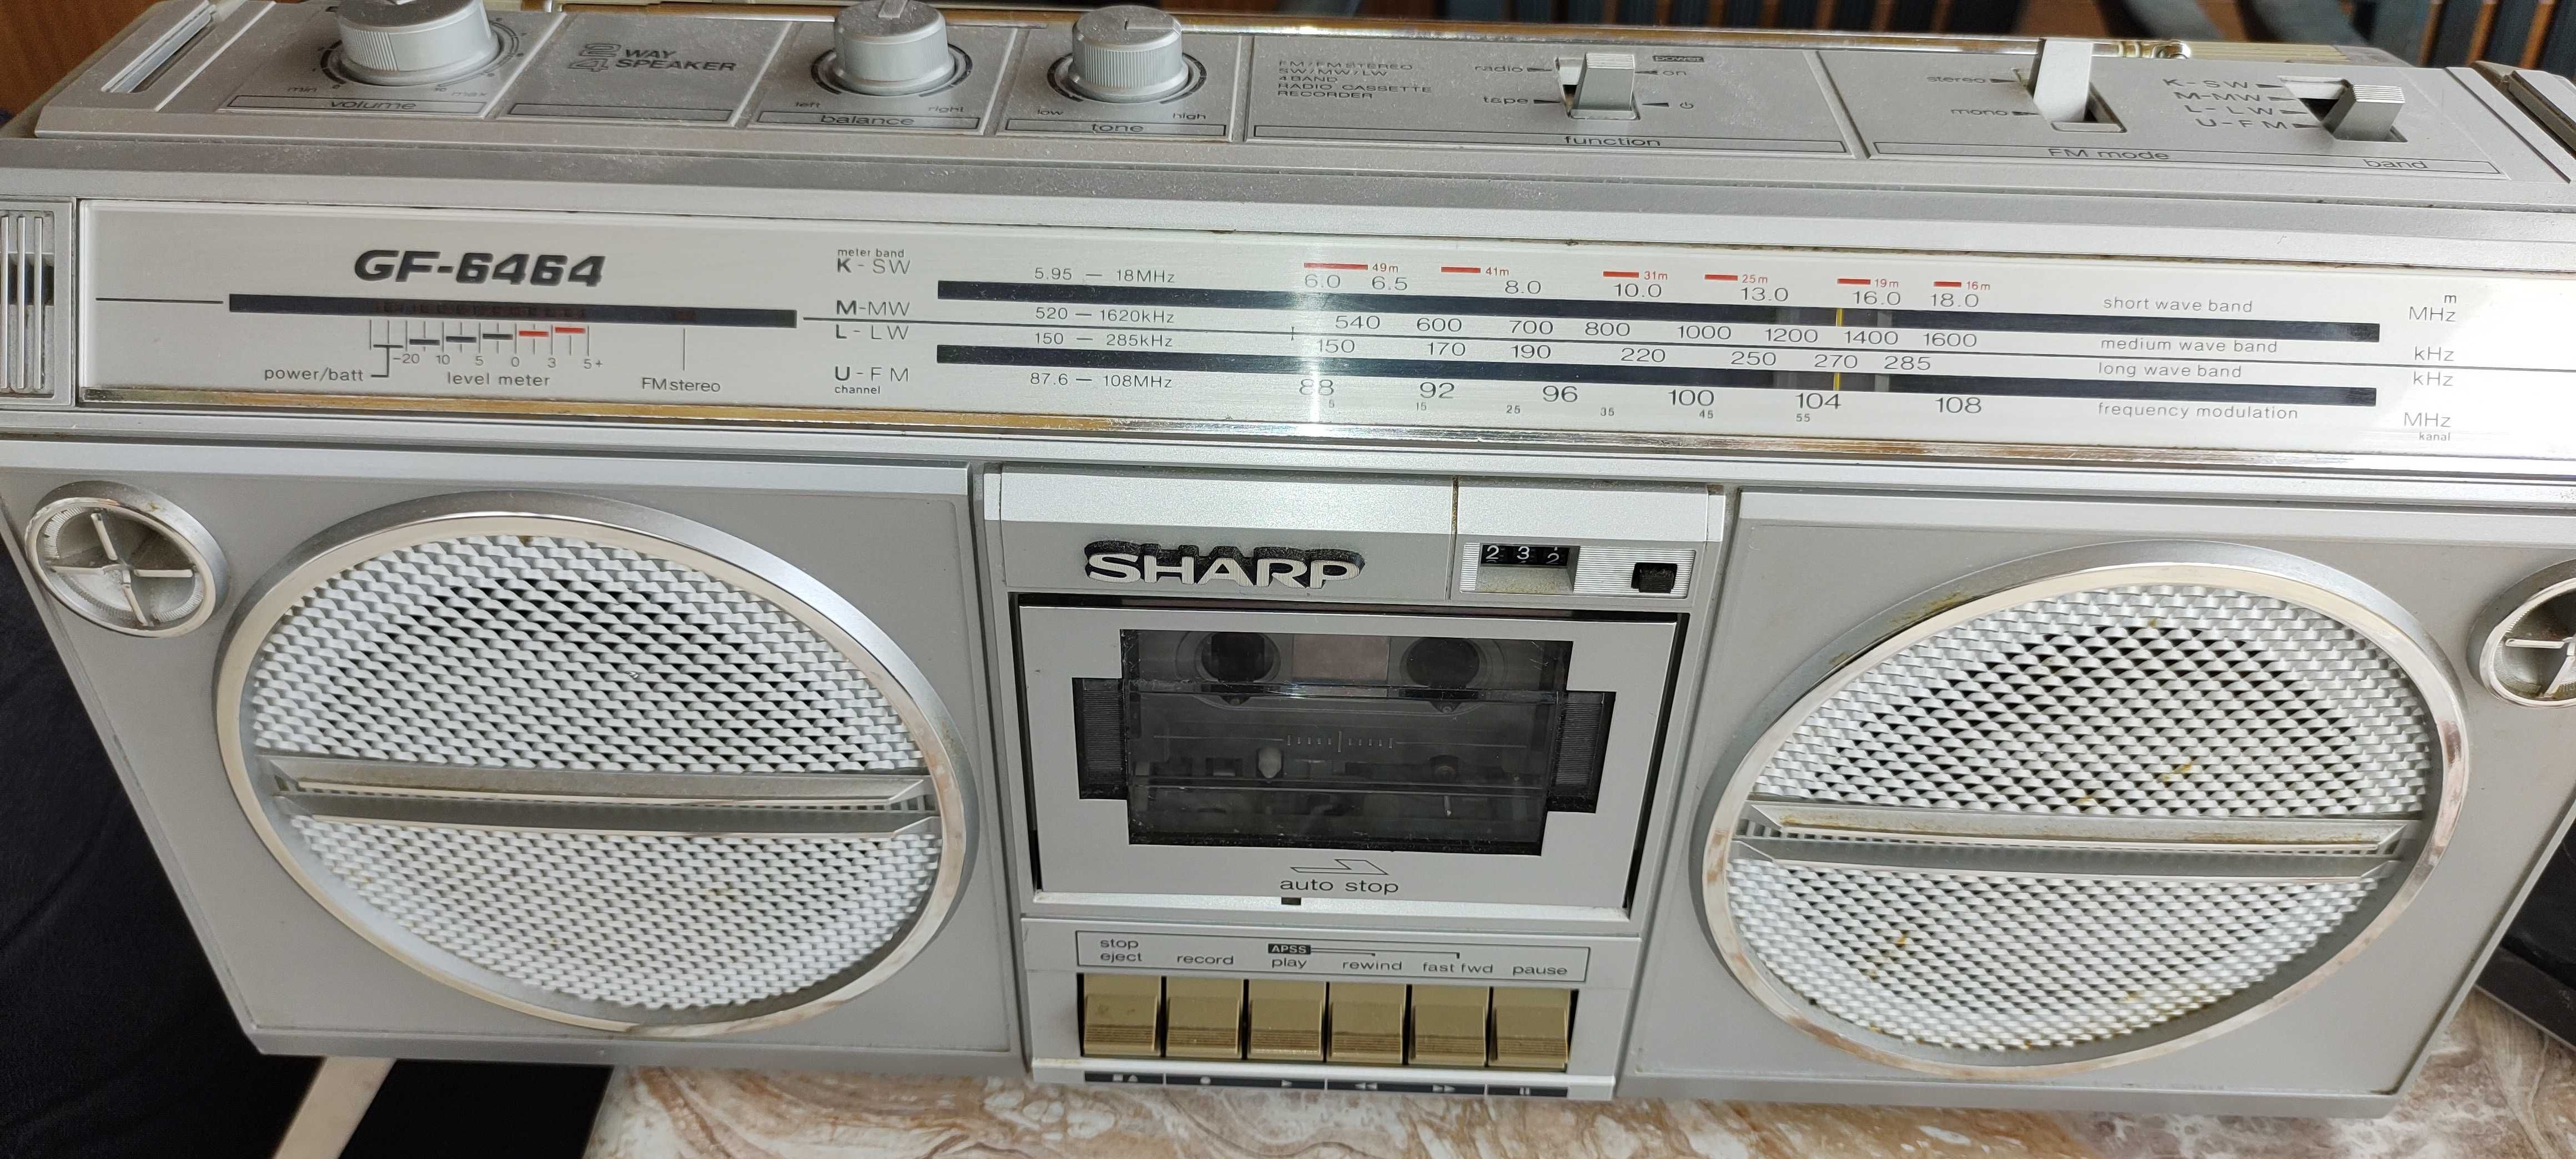 Радиокасетофон Sharp gf 6464